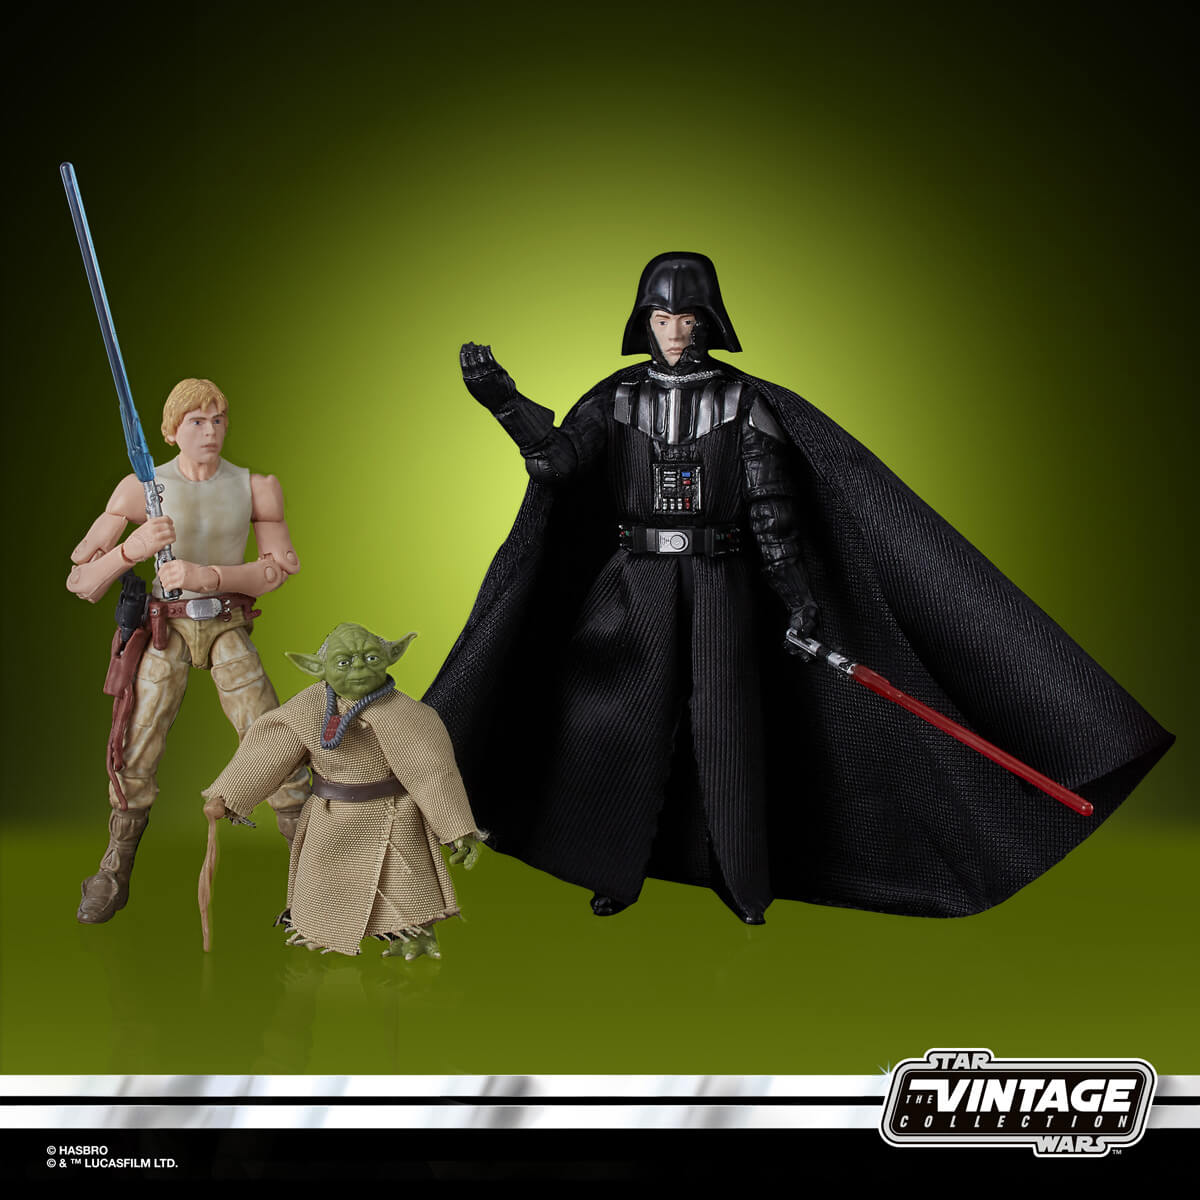 Star Wars 3.75 Vintage CAVE OF EVIL Special Action Figure Set Target New Sealed 